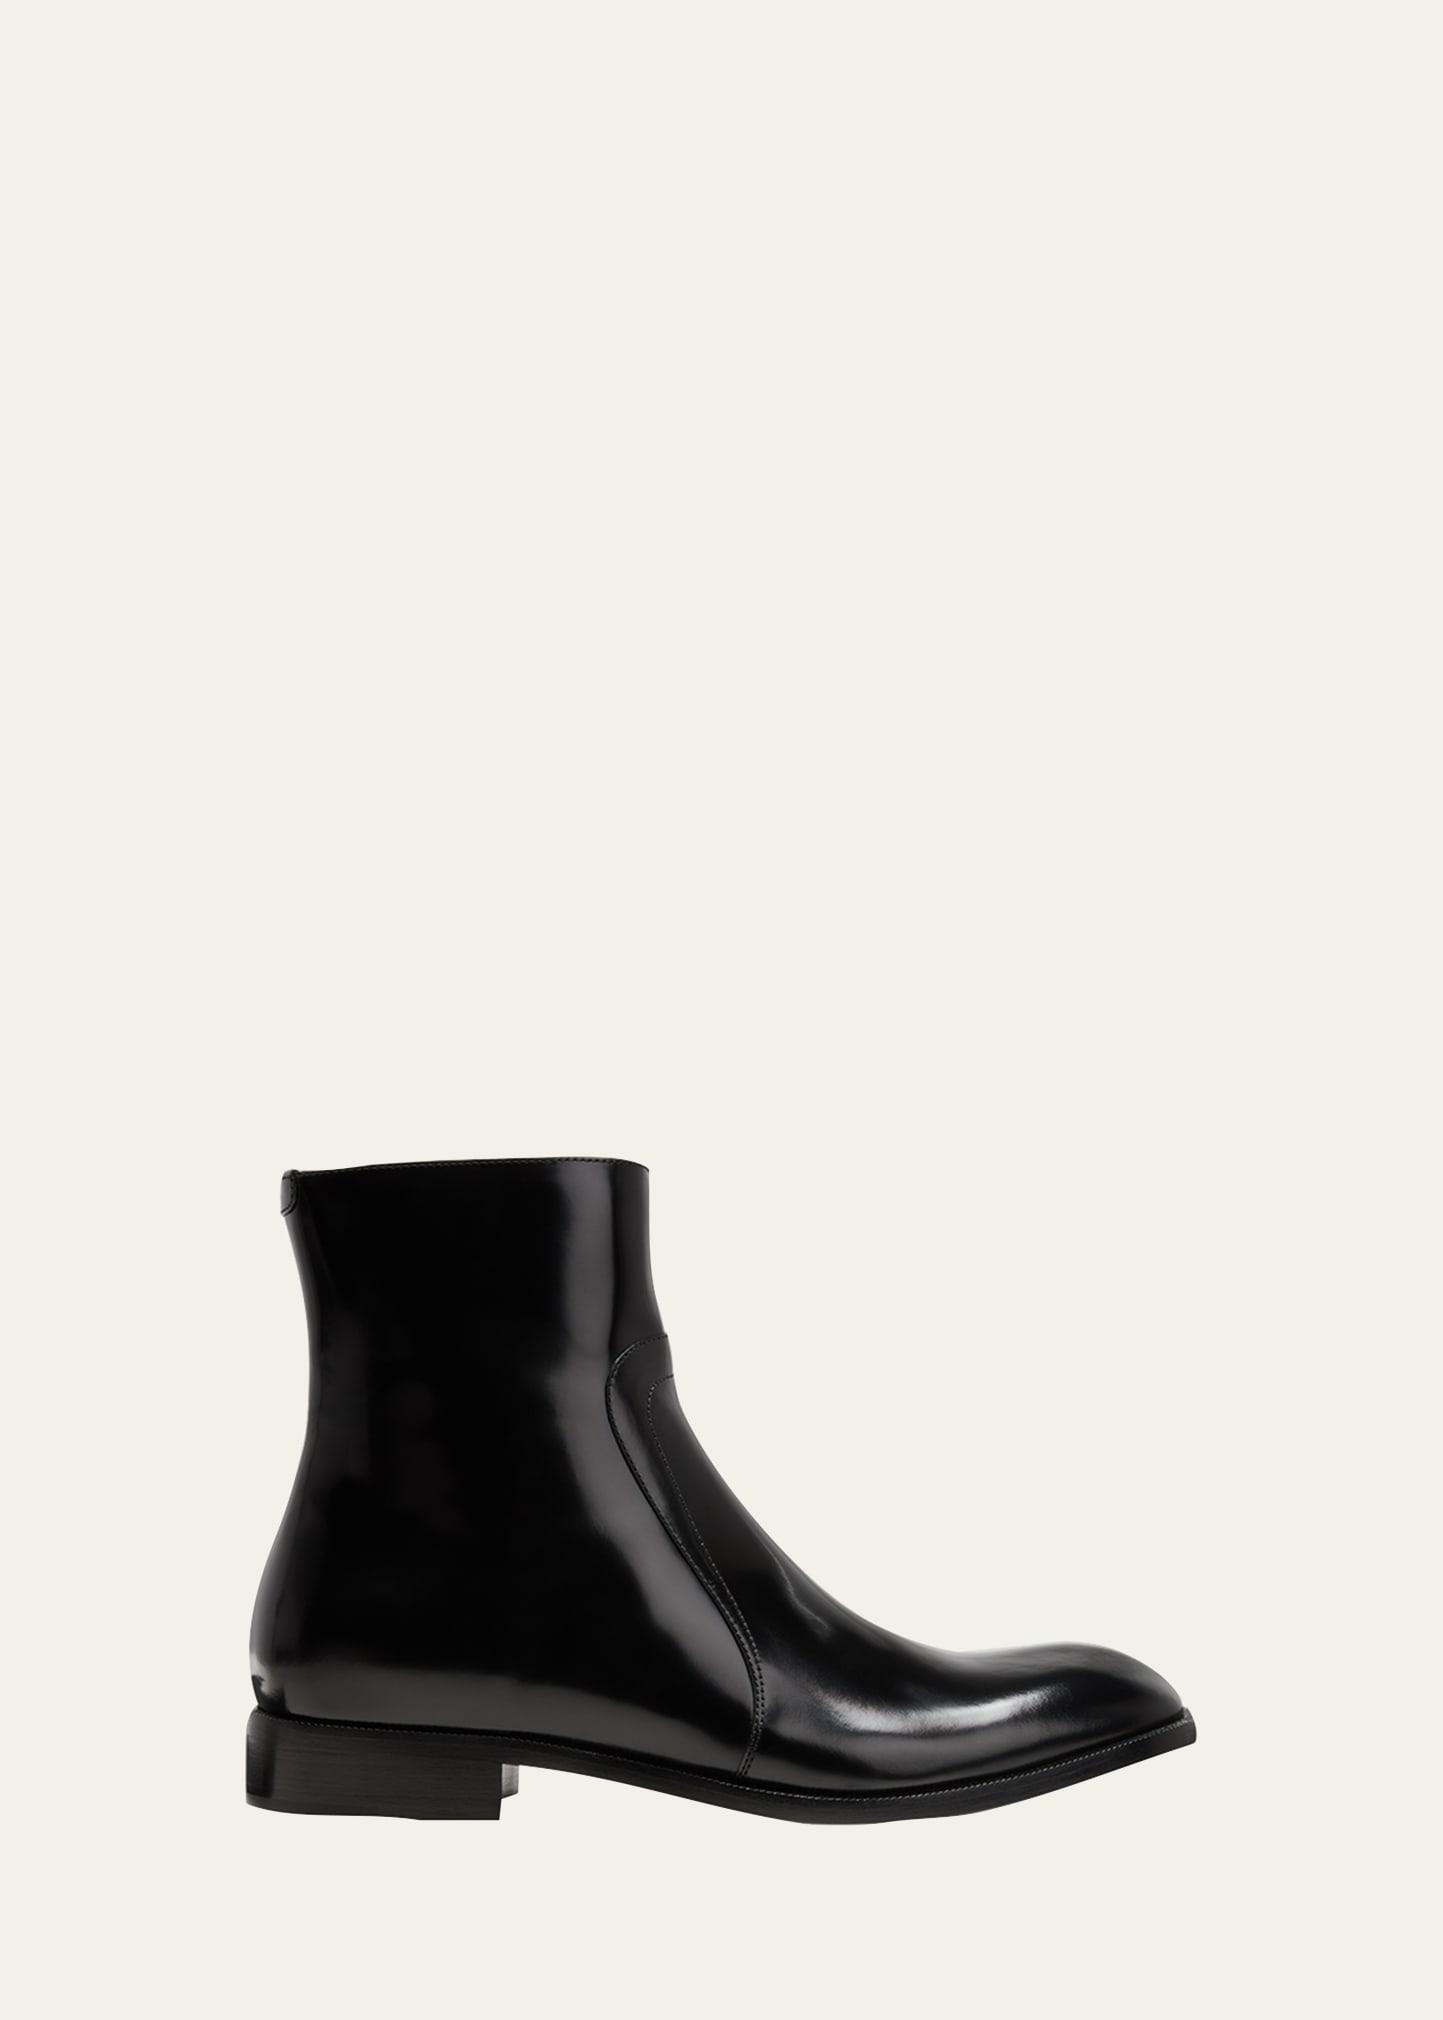 Maison Margiela Men's Leather Zip Ankle Boots - Size: 44 EU (11D US) - BLACK Product Image